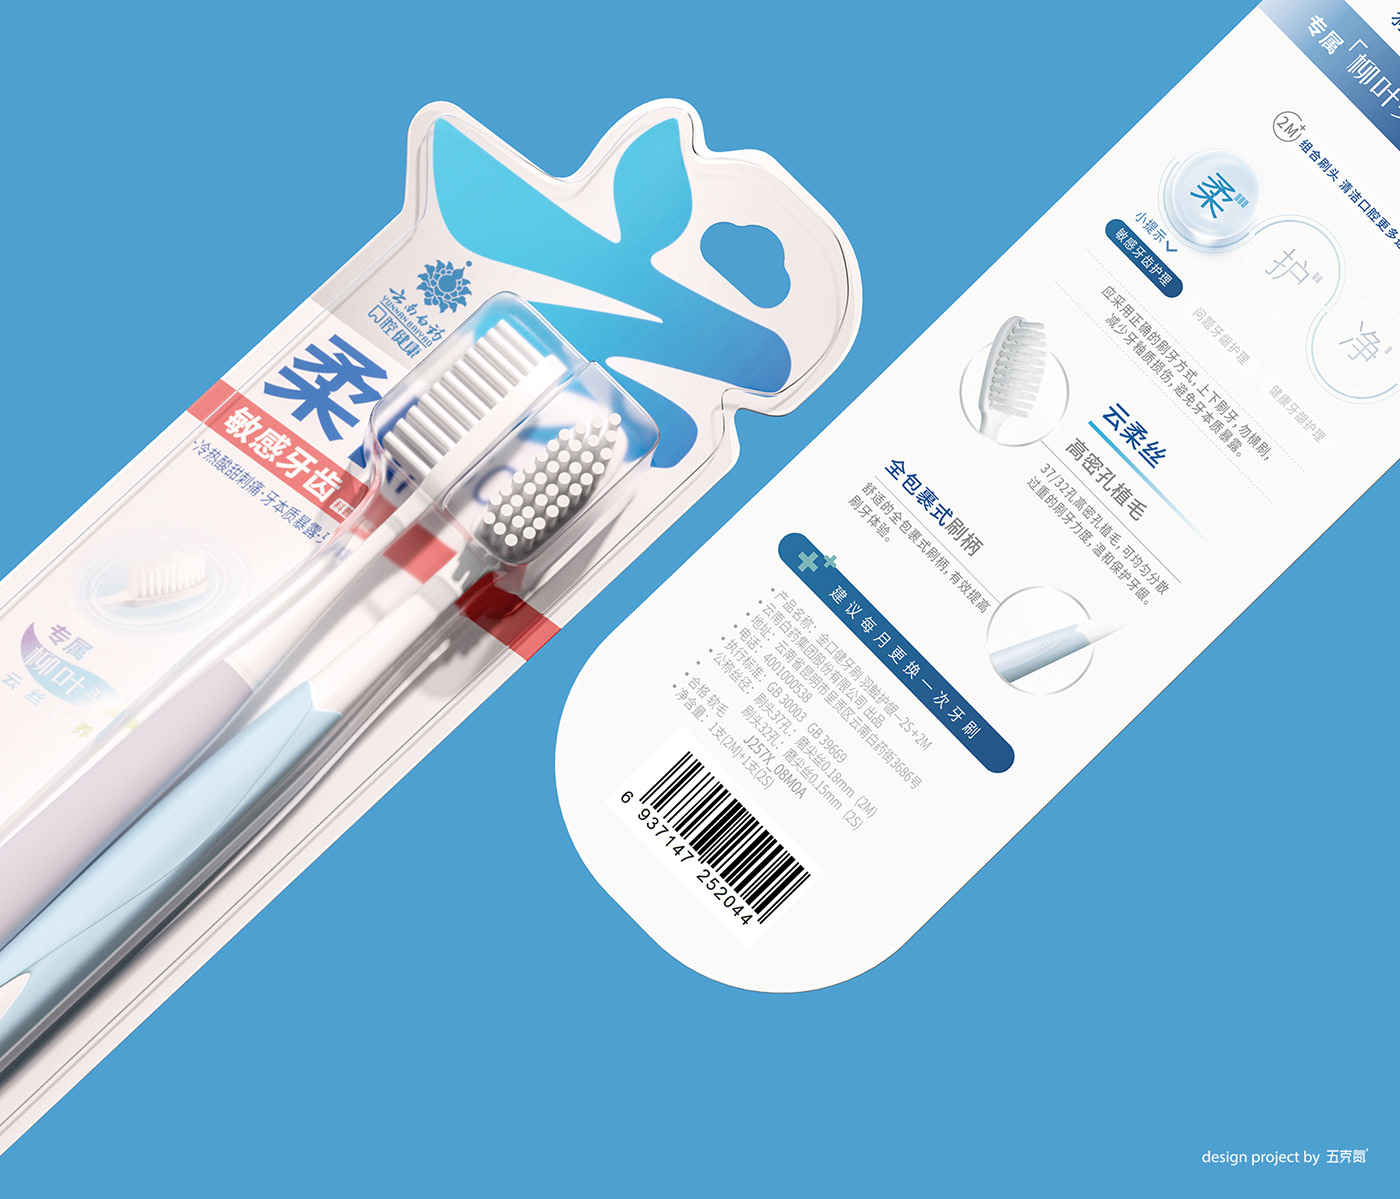 Mouth packaging system toothbrush 云南白药 医美包装 口腔护理 牙刷包装 牙齿 系列包装 超级符号